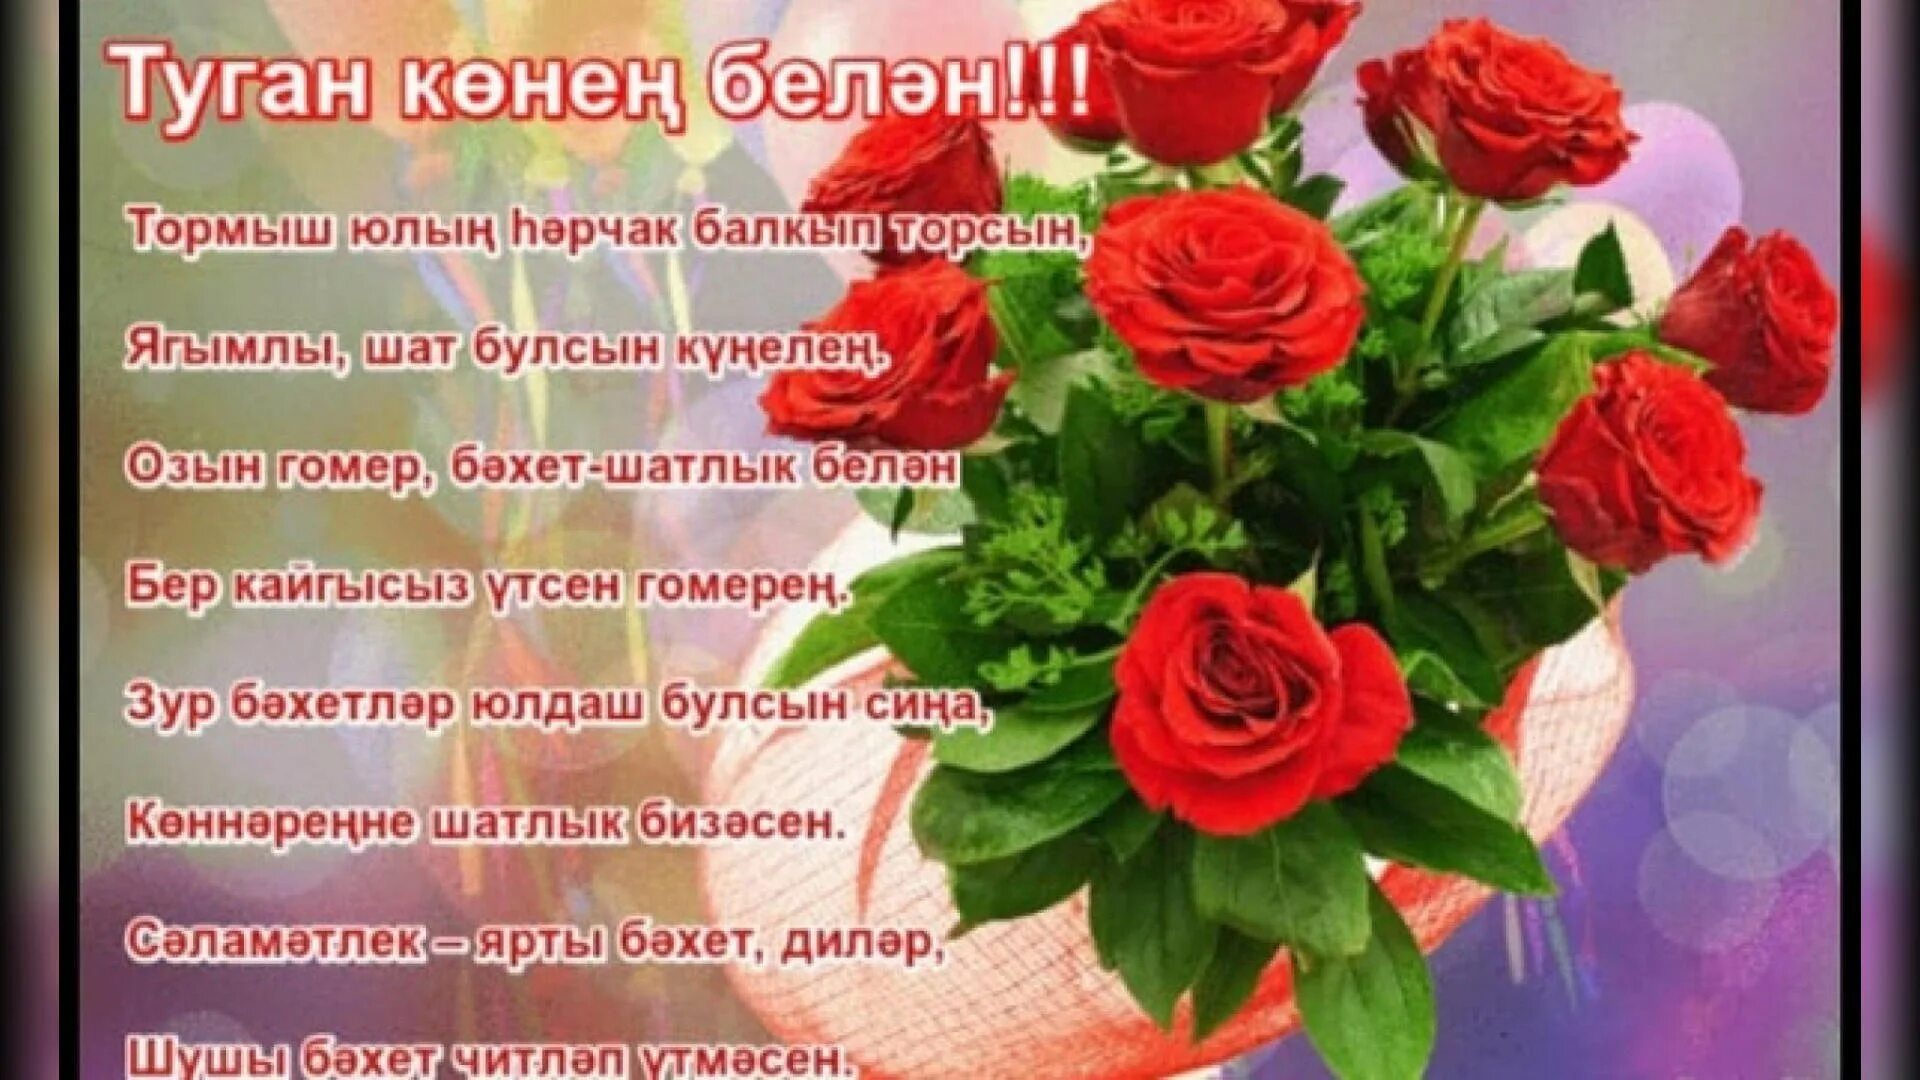 Кодагый туган конен. Татарские поздравления с днем рождения. Поздравления с днём рождения на татарском языке. Поздравления с днём рождения женщине на татарском языке. Поздравления с днём рождения женщине на татарском.